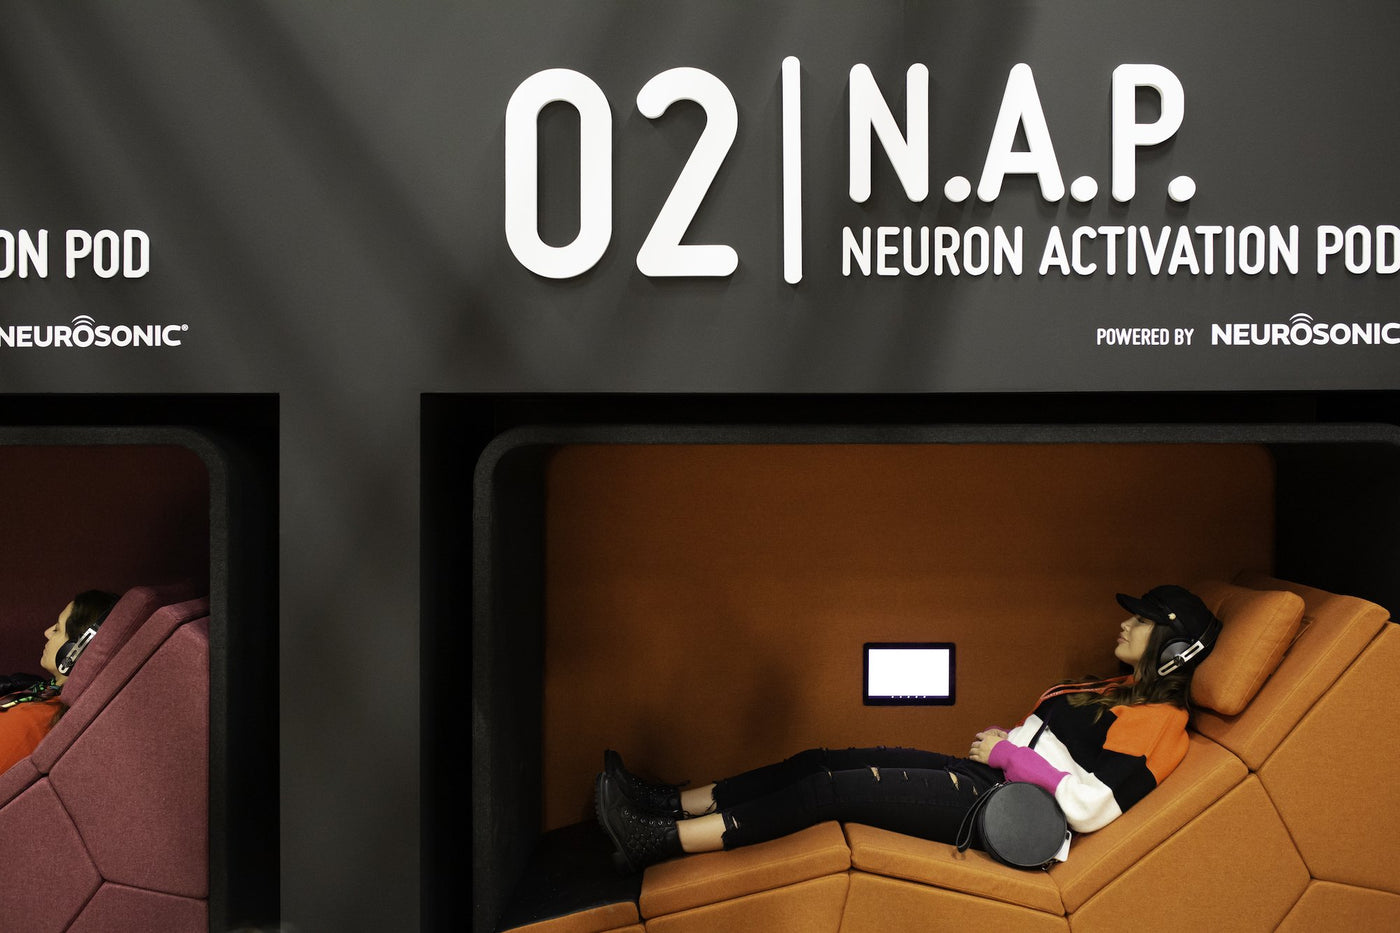 N.A.P. Neuron Activation Pod